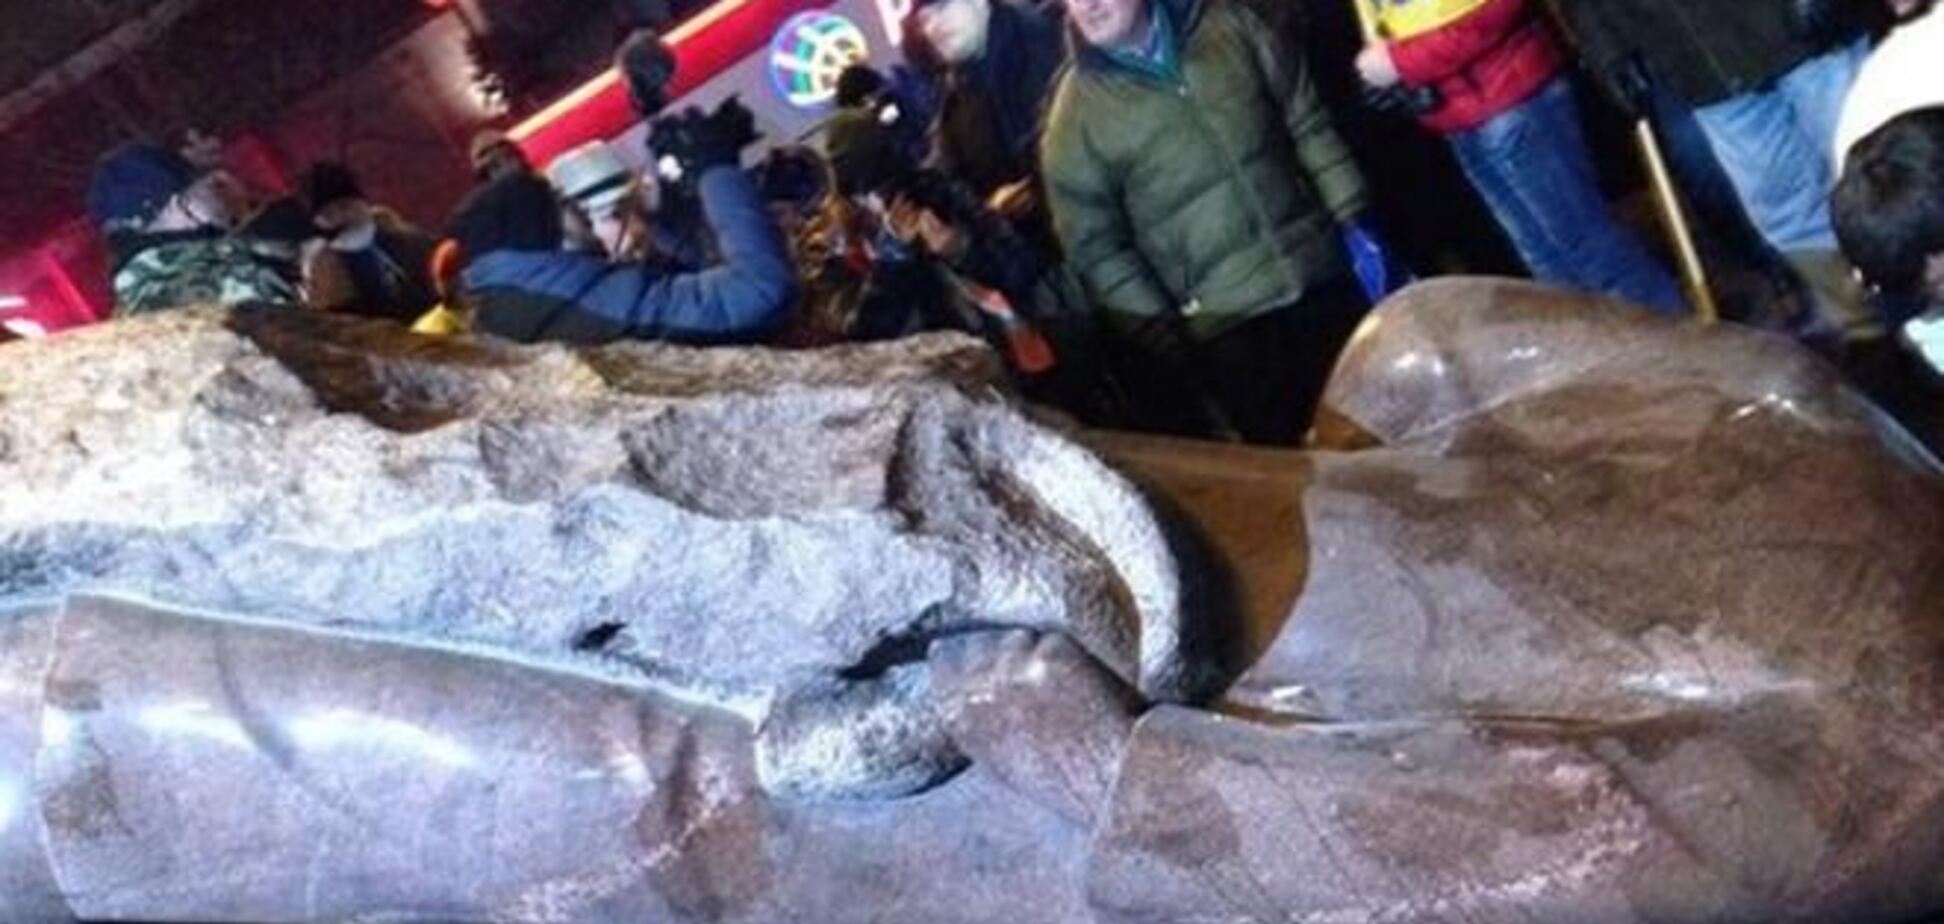 Симоненко: Знесення пам'ятника Леніну в Києві - це прояв 'демократичних' цінностей Європи